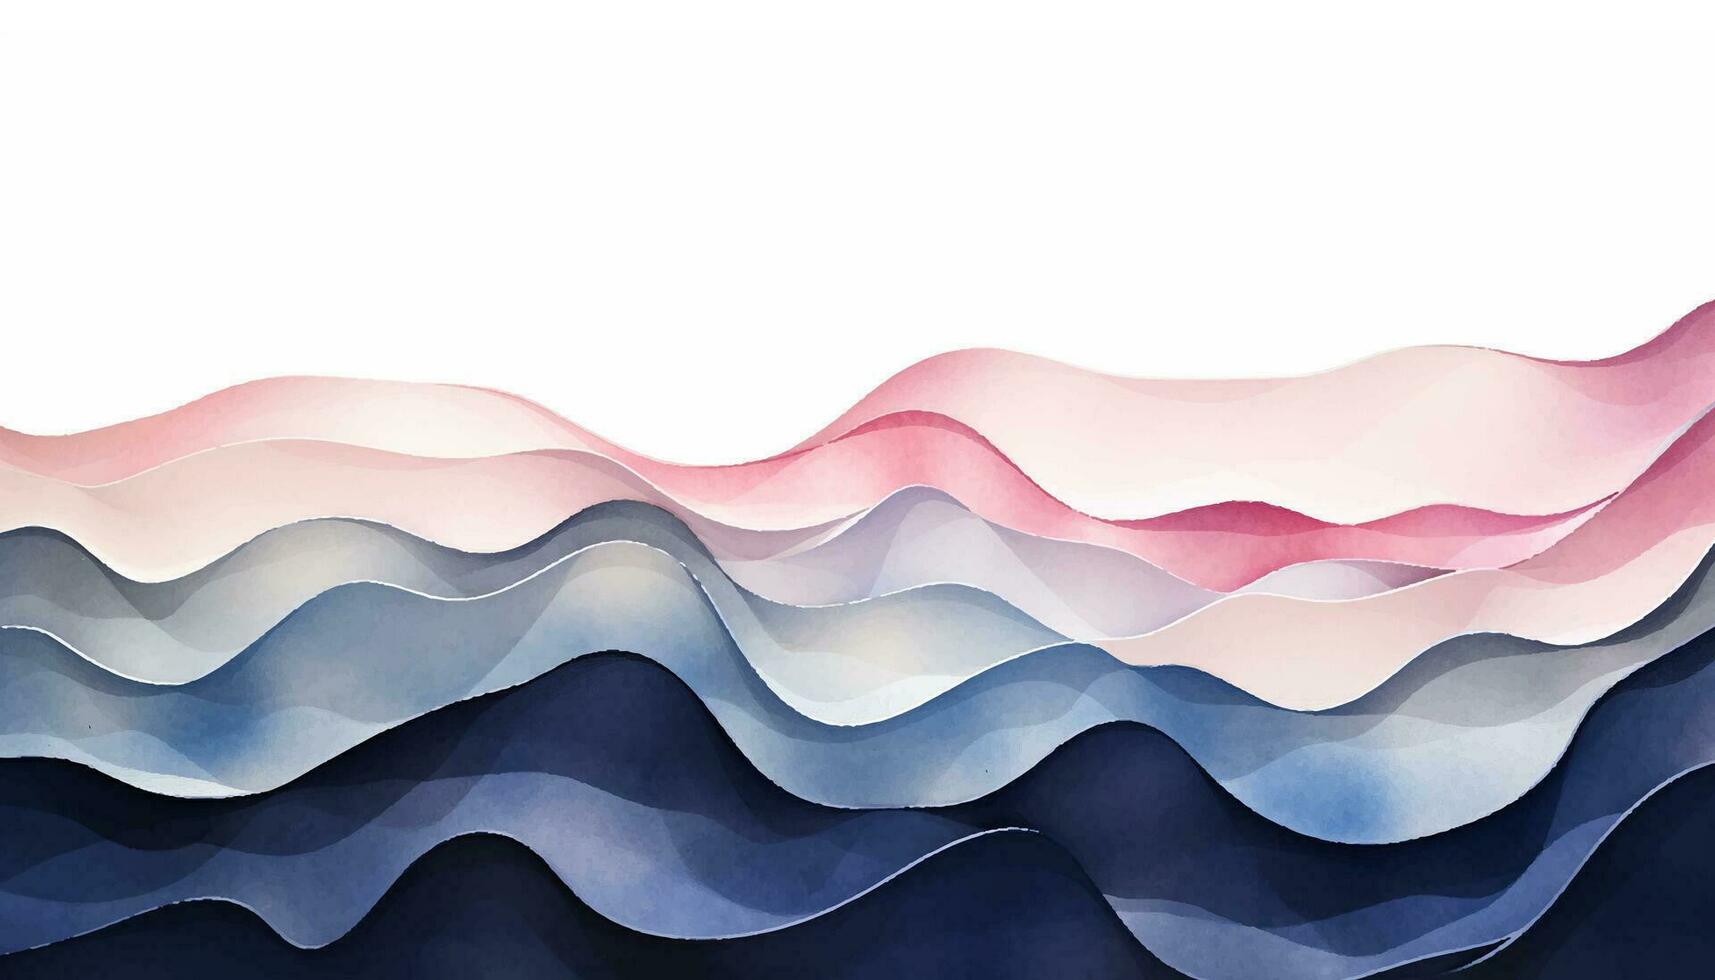 abstrato onda fundo. vetor ilustração. pode estar usava para publicidade, apresentação. aguarela fundo. azul, marinha, índigo e rosa, rosa, corar colori ondas.